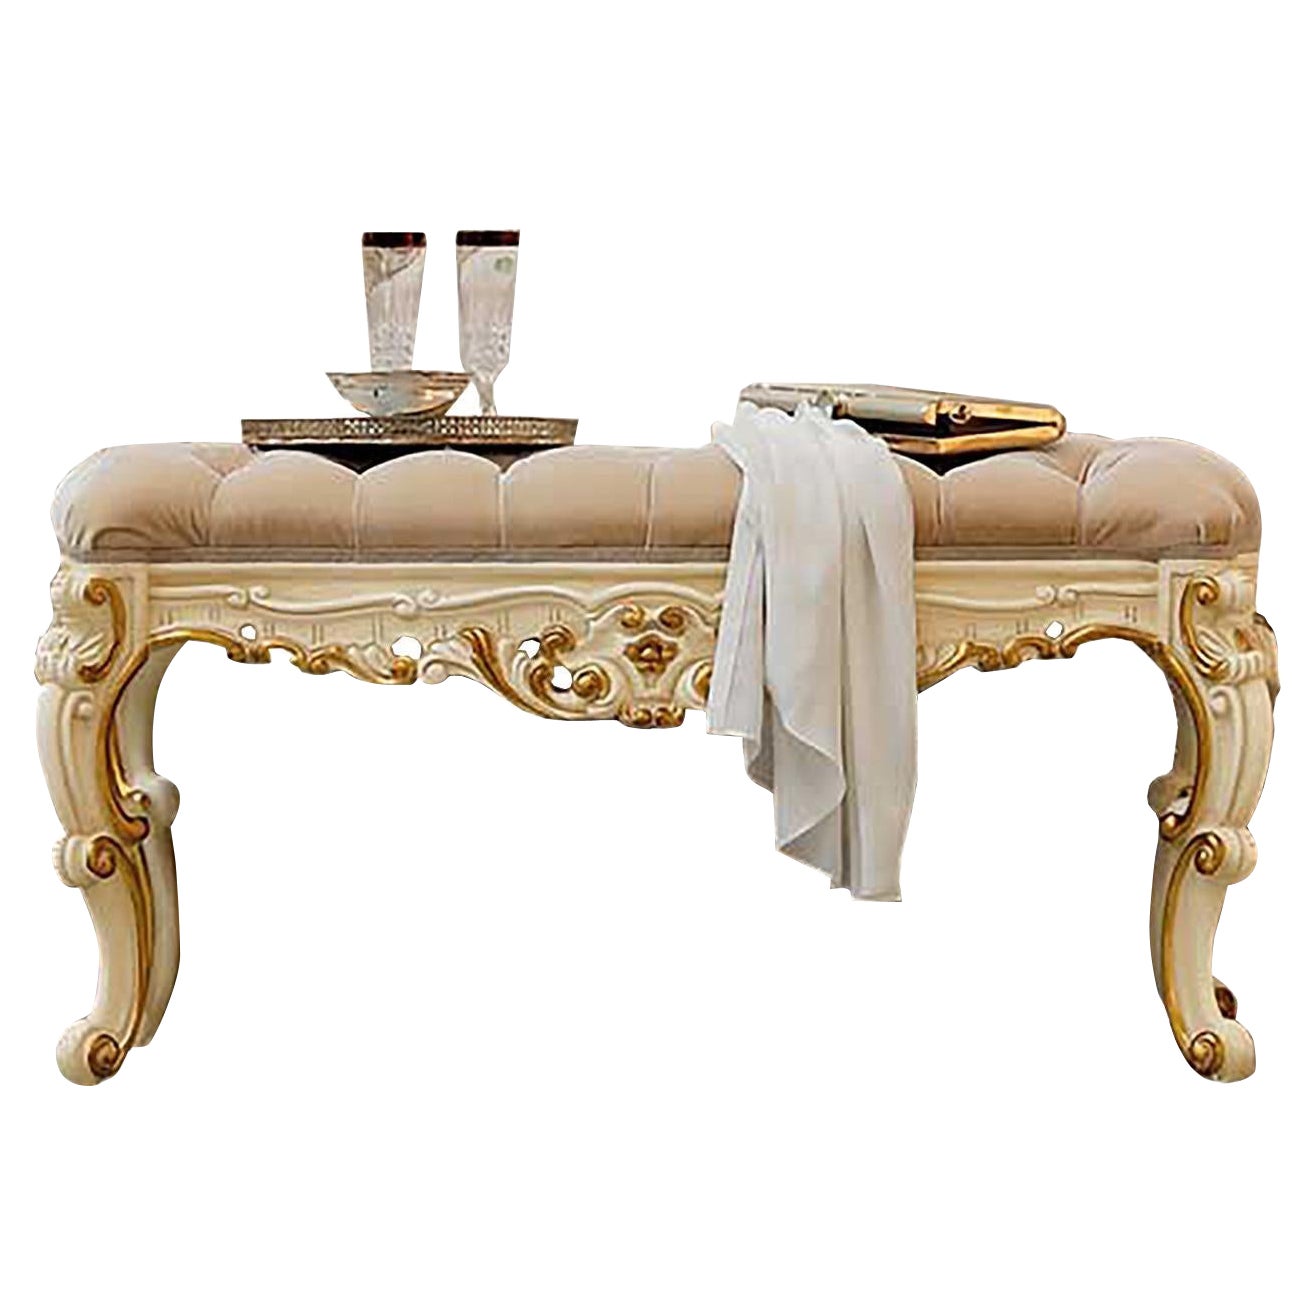 Bright Bed Bench mit Blattgold von Modenese, Barock inspiriert, 21. Jahrhundert